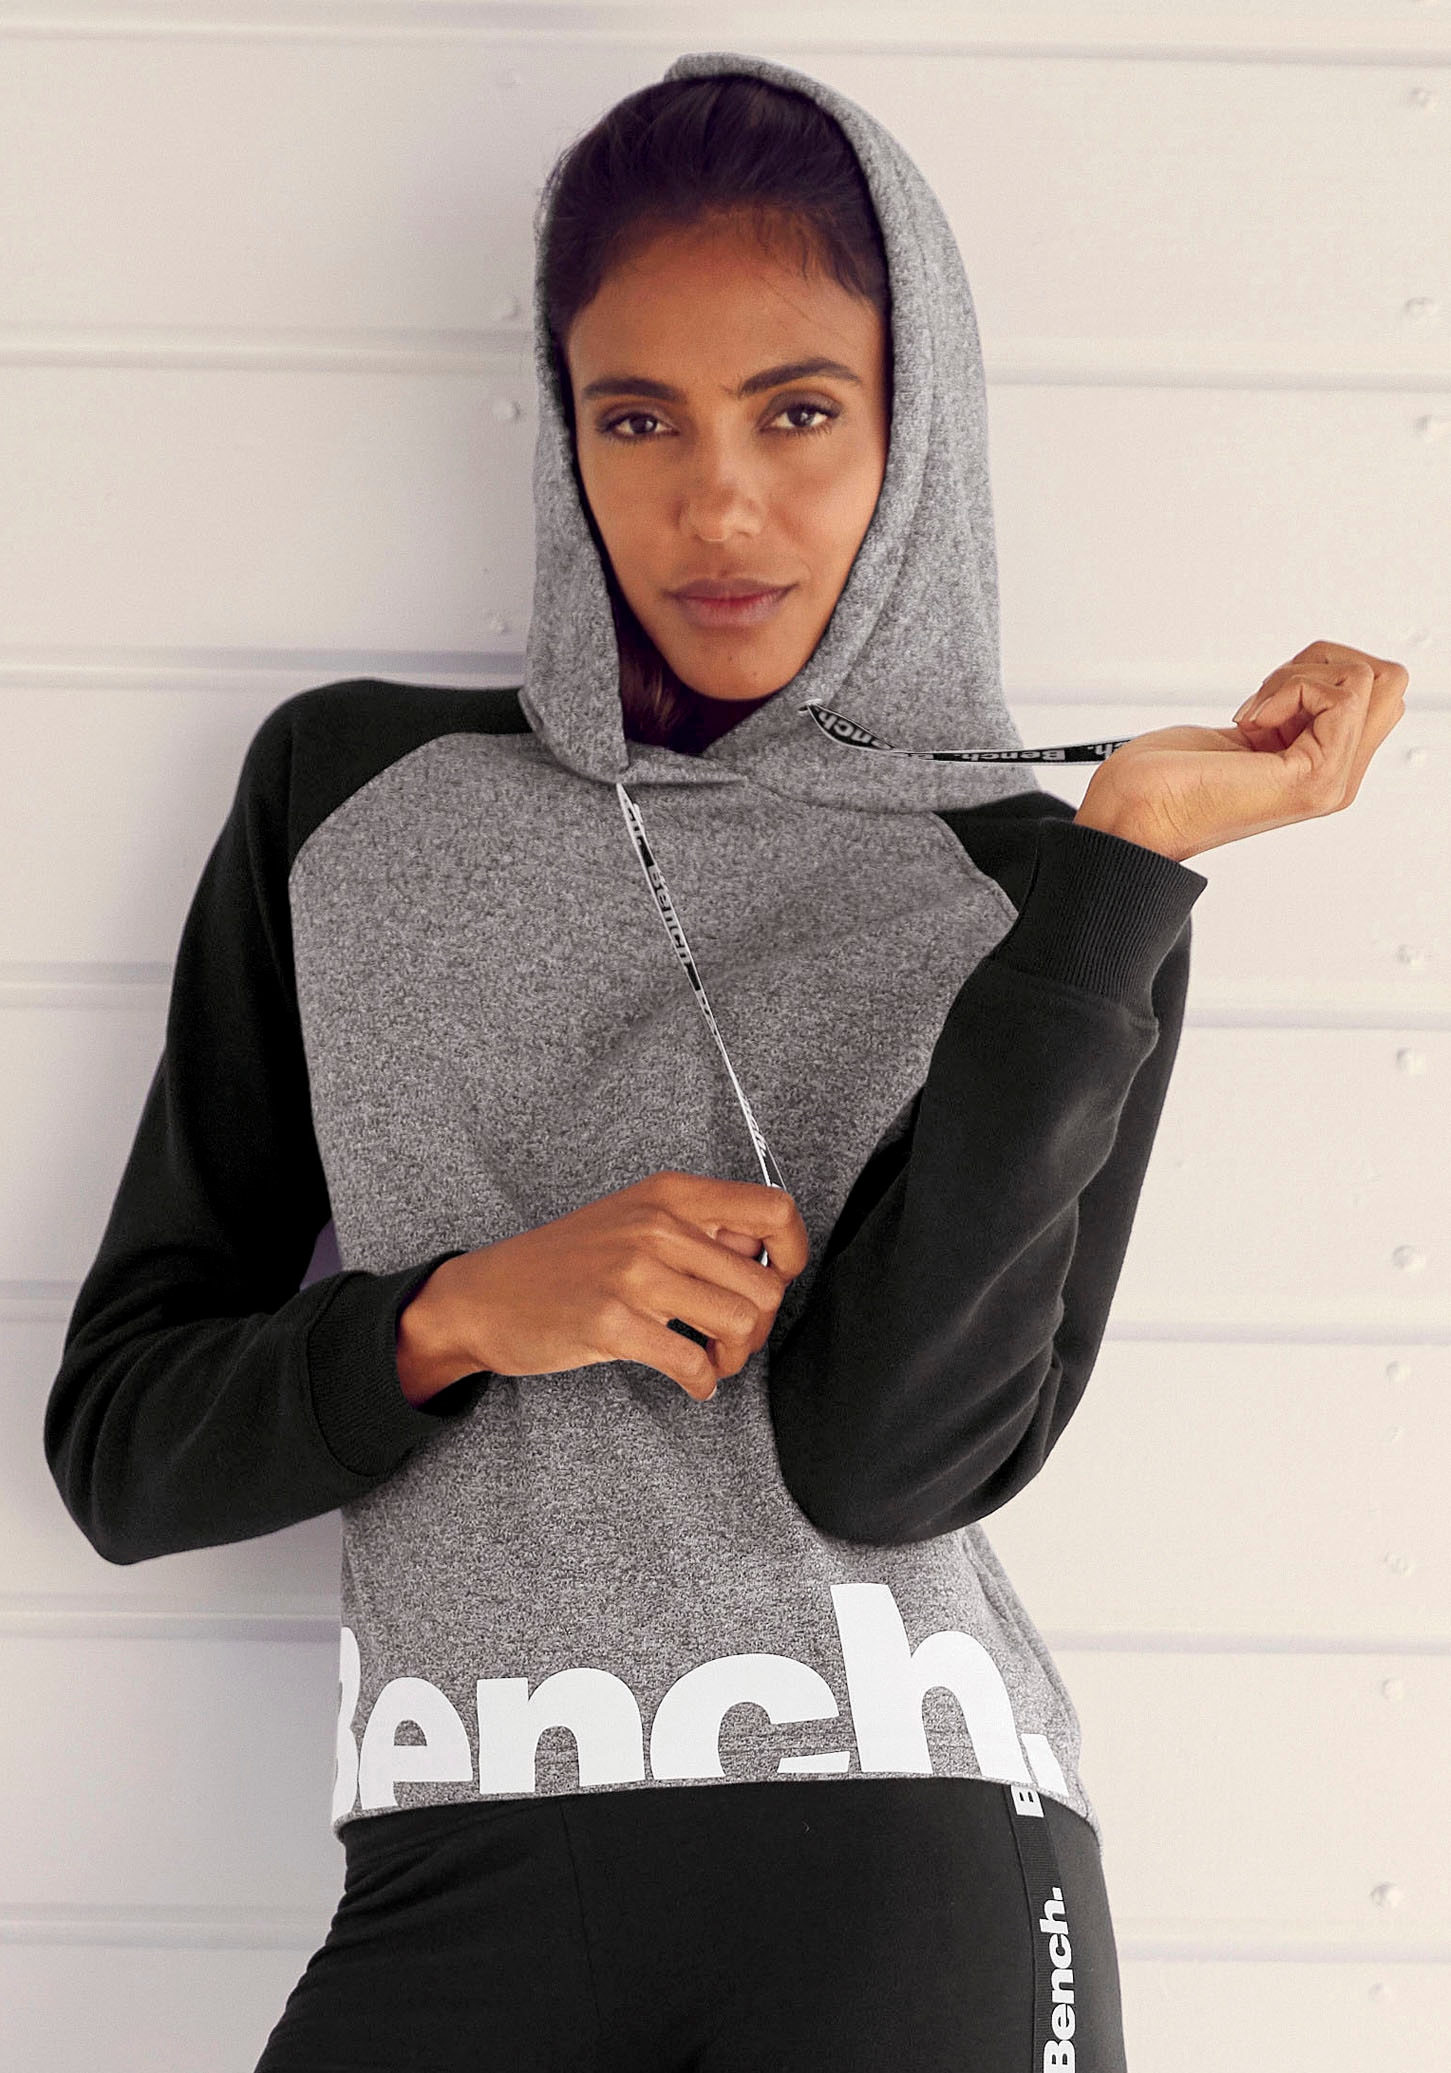 Bench. Loungewear Kapuzensweatshirt, mit farblich abgesetzten Ärmeln und  Logodruck, Loungeanzug, Hoodie bei